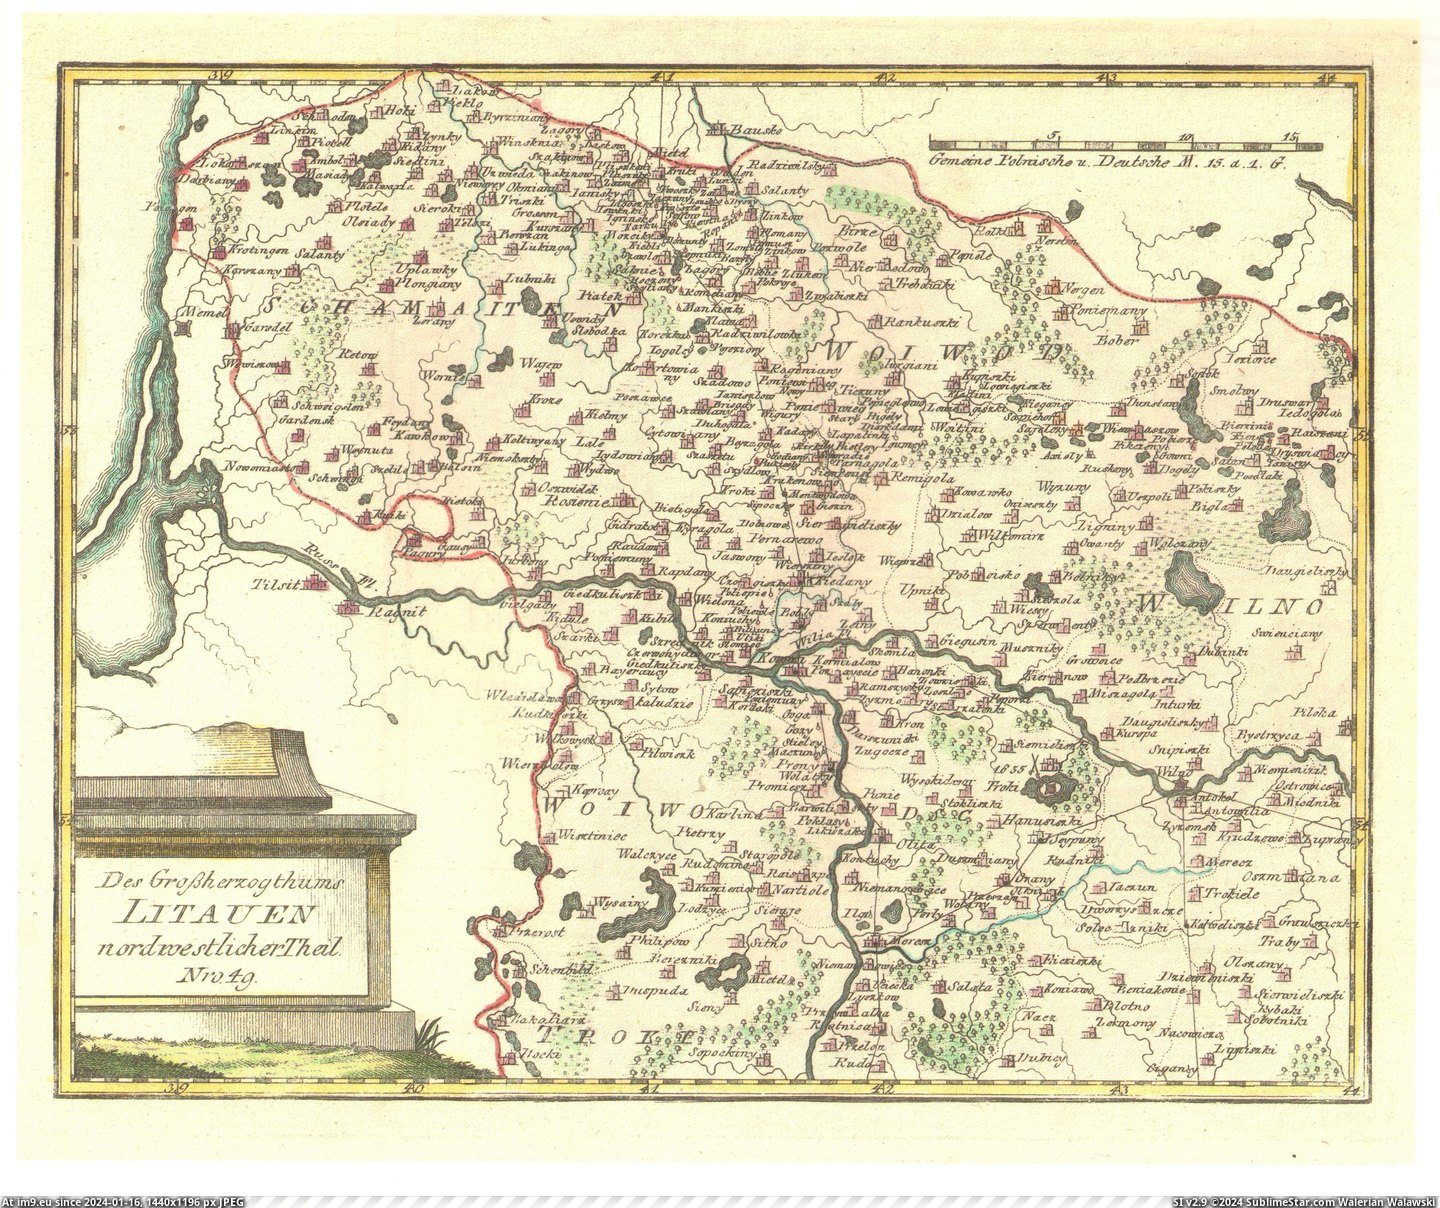 1792-lt-de (in Lenkinimas)